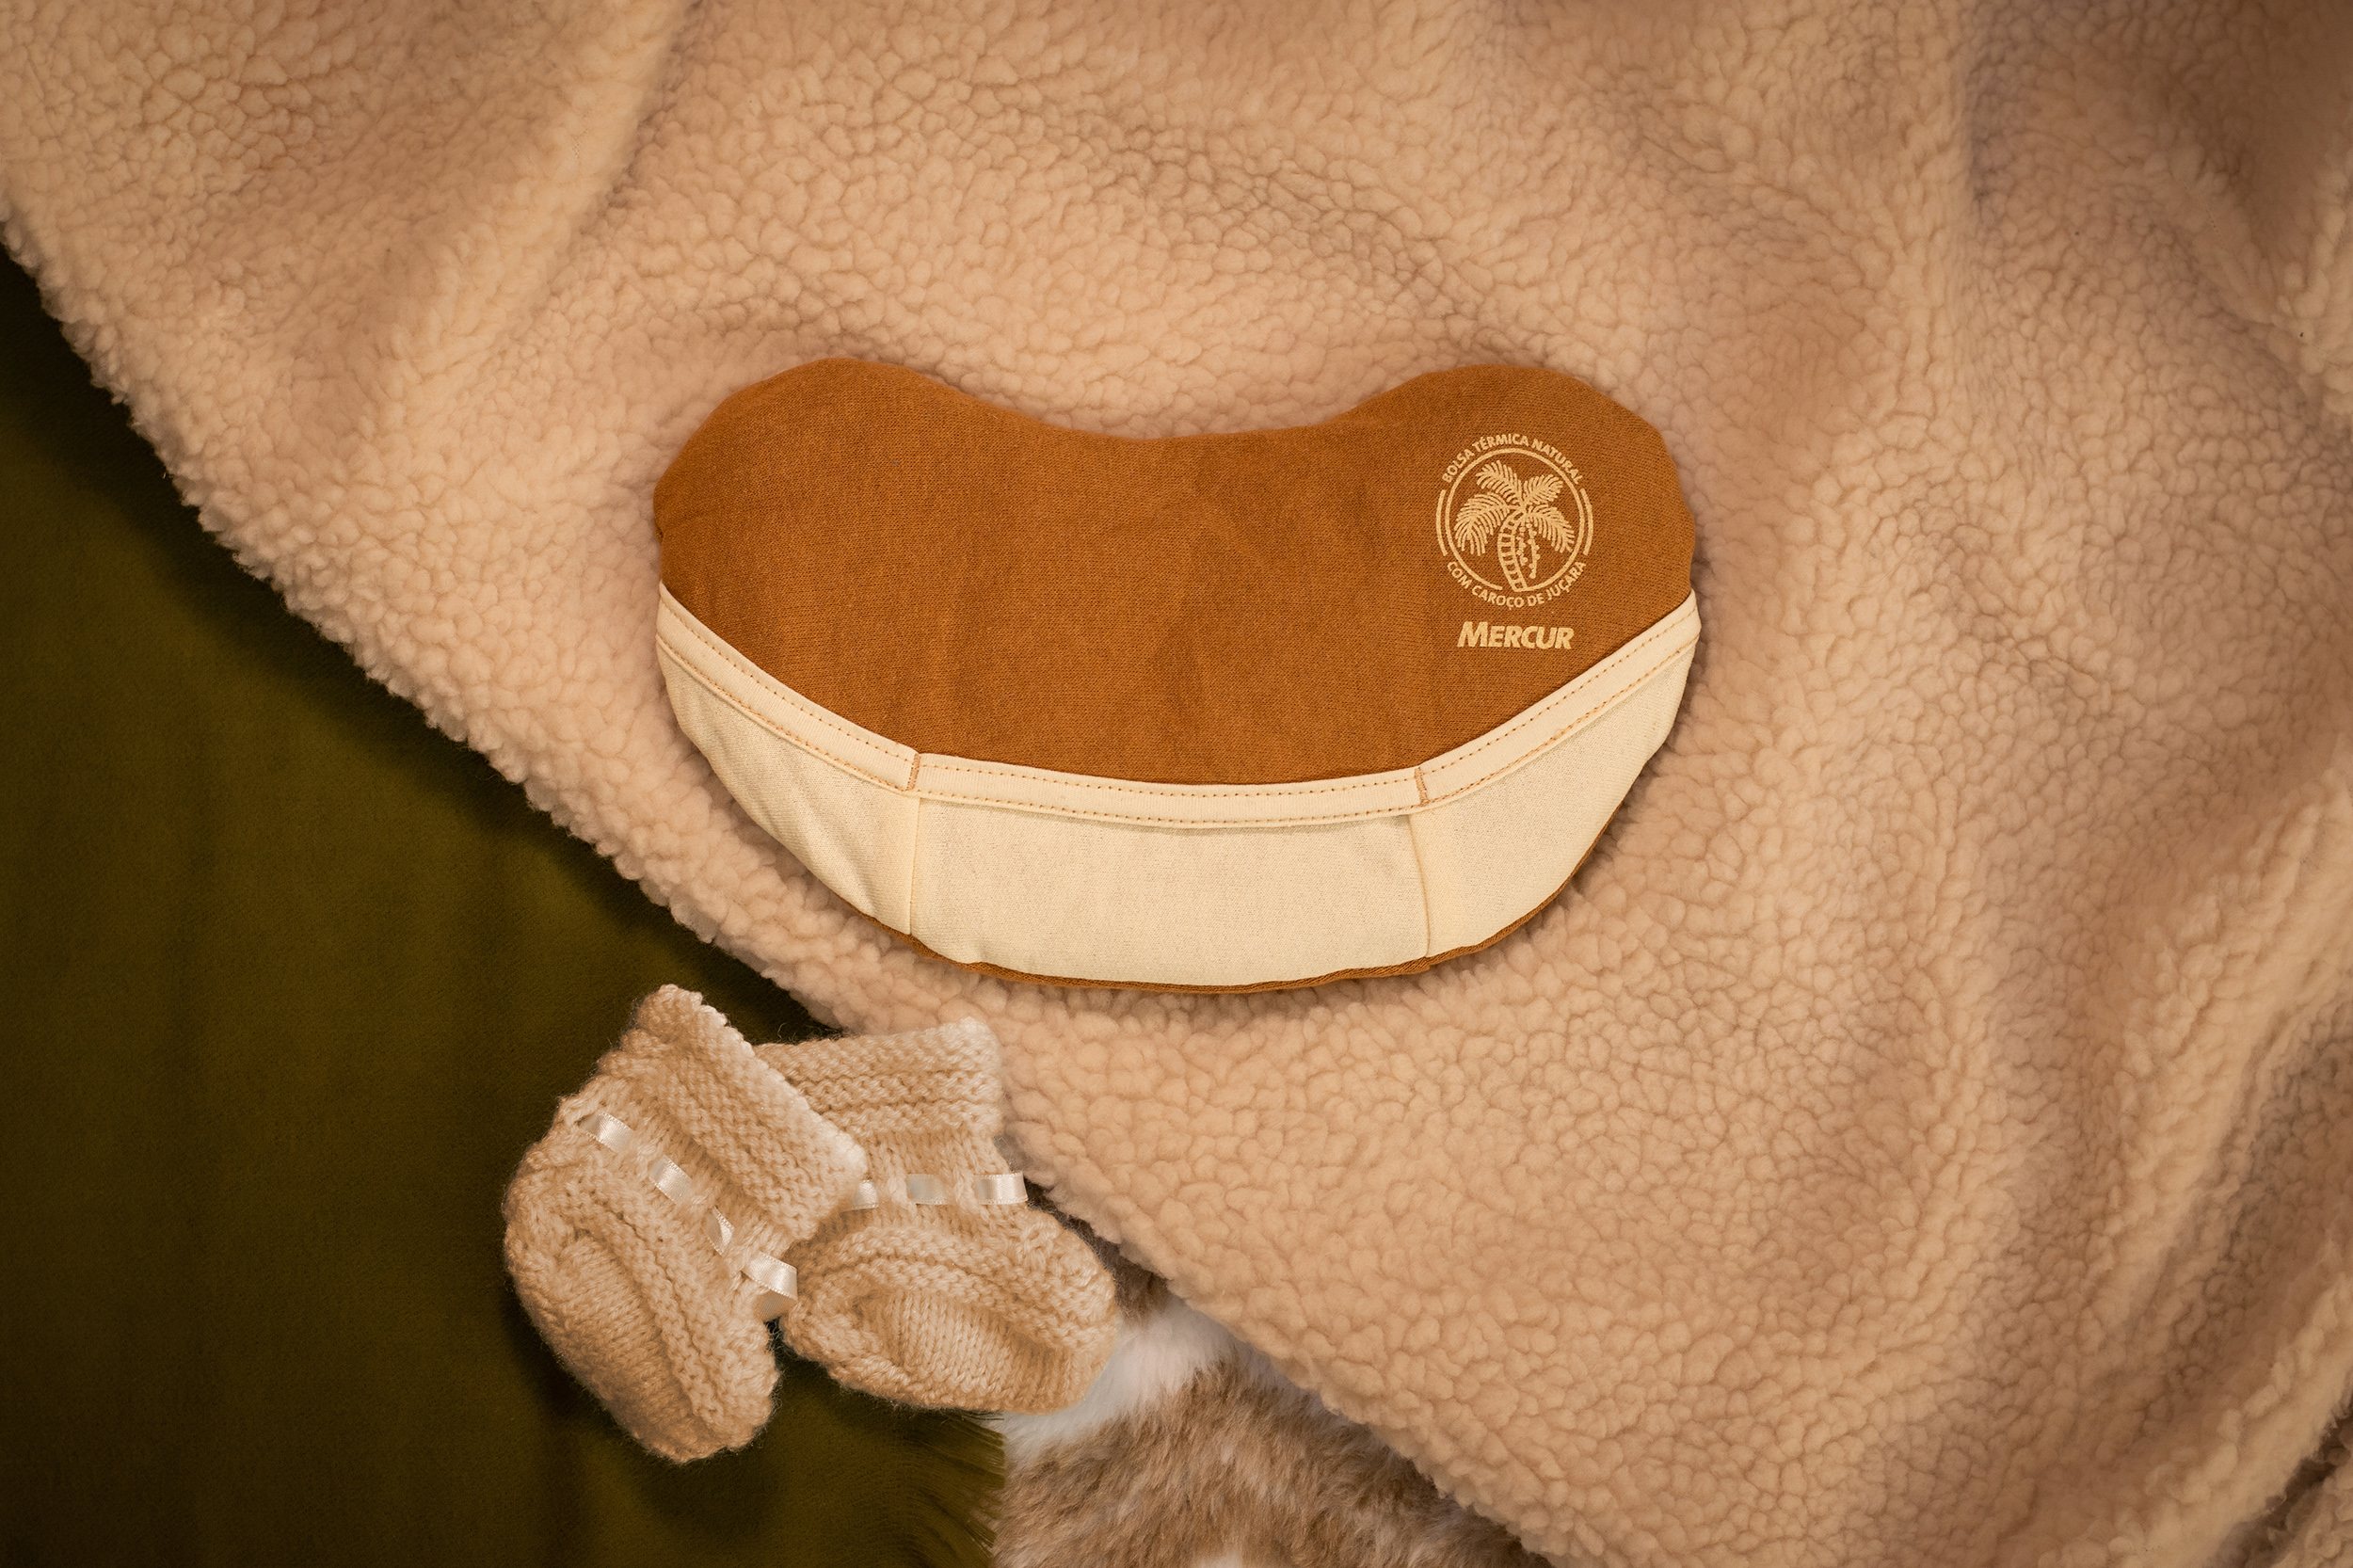 Imagem vista de cima de uma Bolsa Térmica Natural pequena, disposta sobre alguns cobertores. Abaixo, à esquerda da Bolsa, um par de sapatinhos de bebê, em tricô.